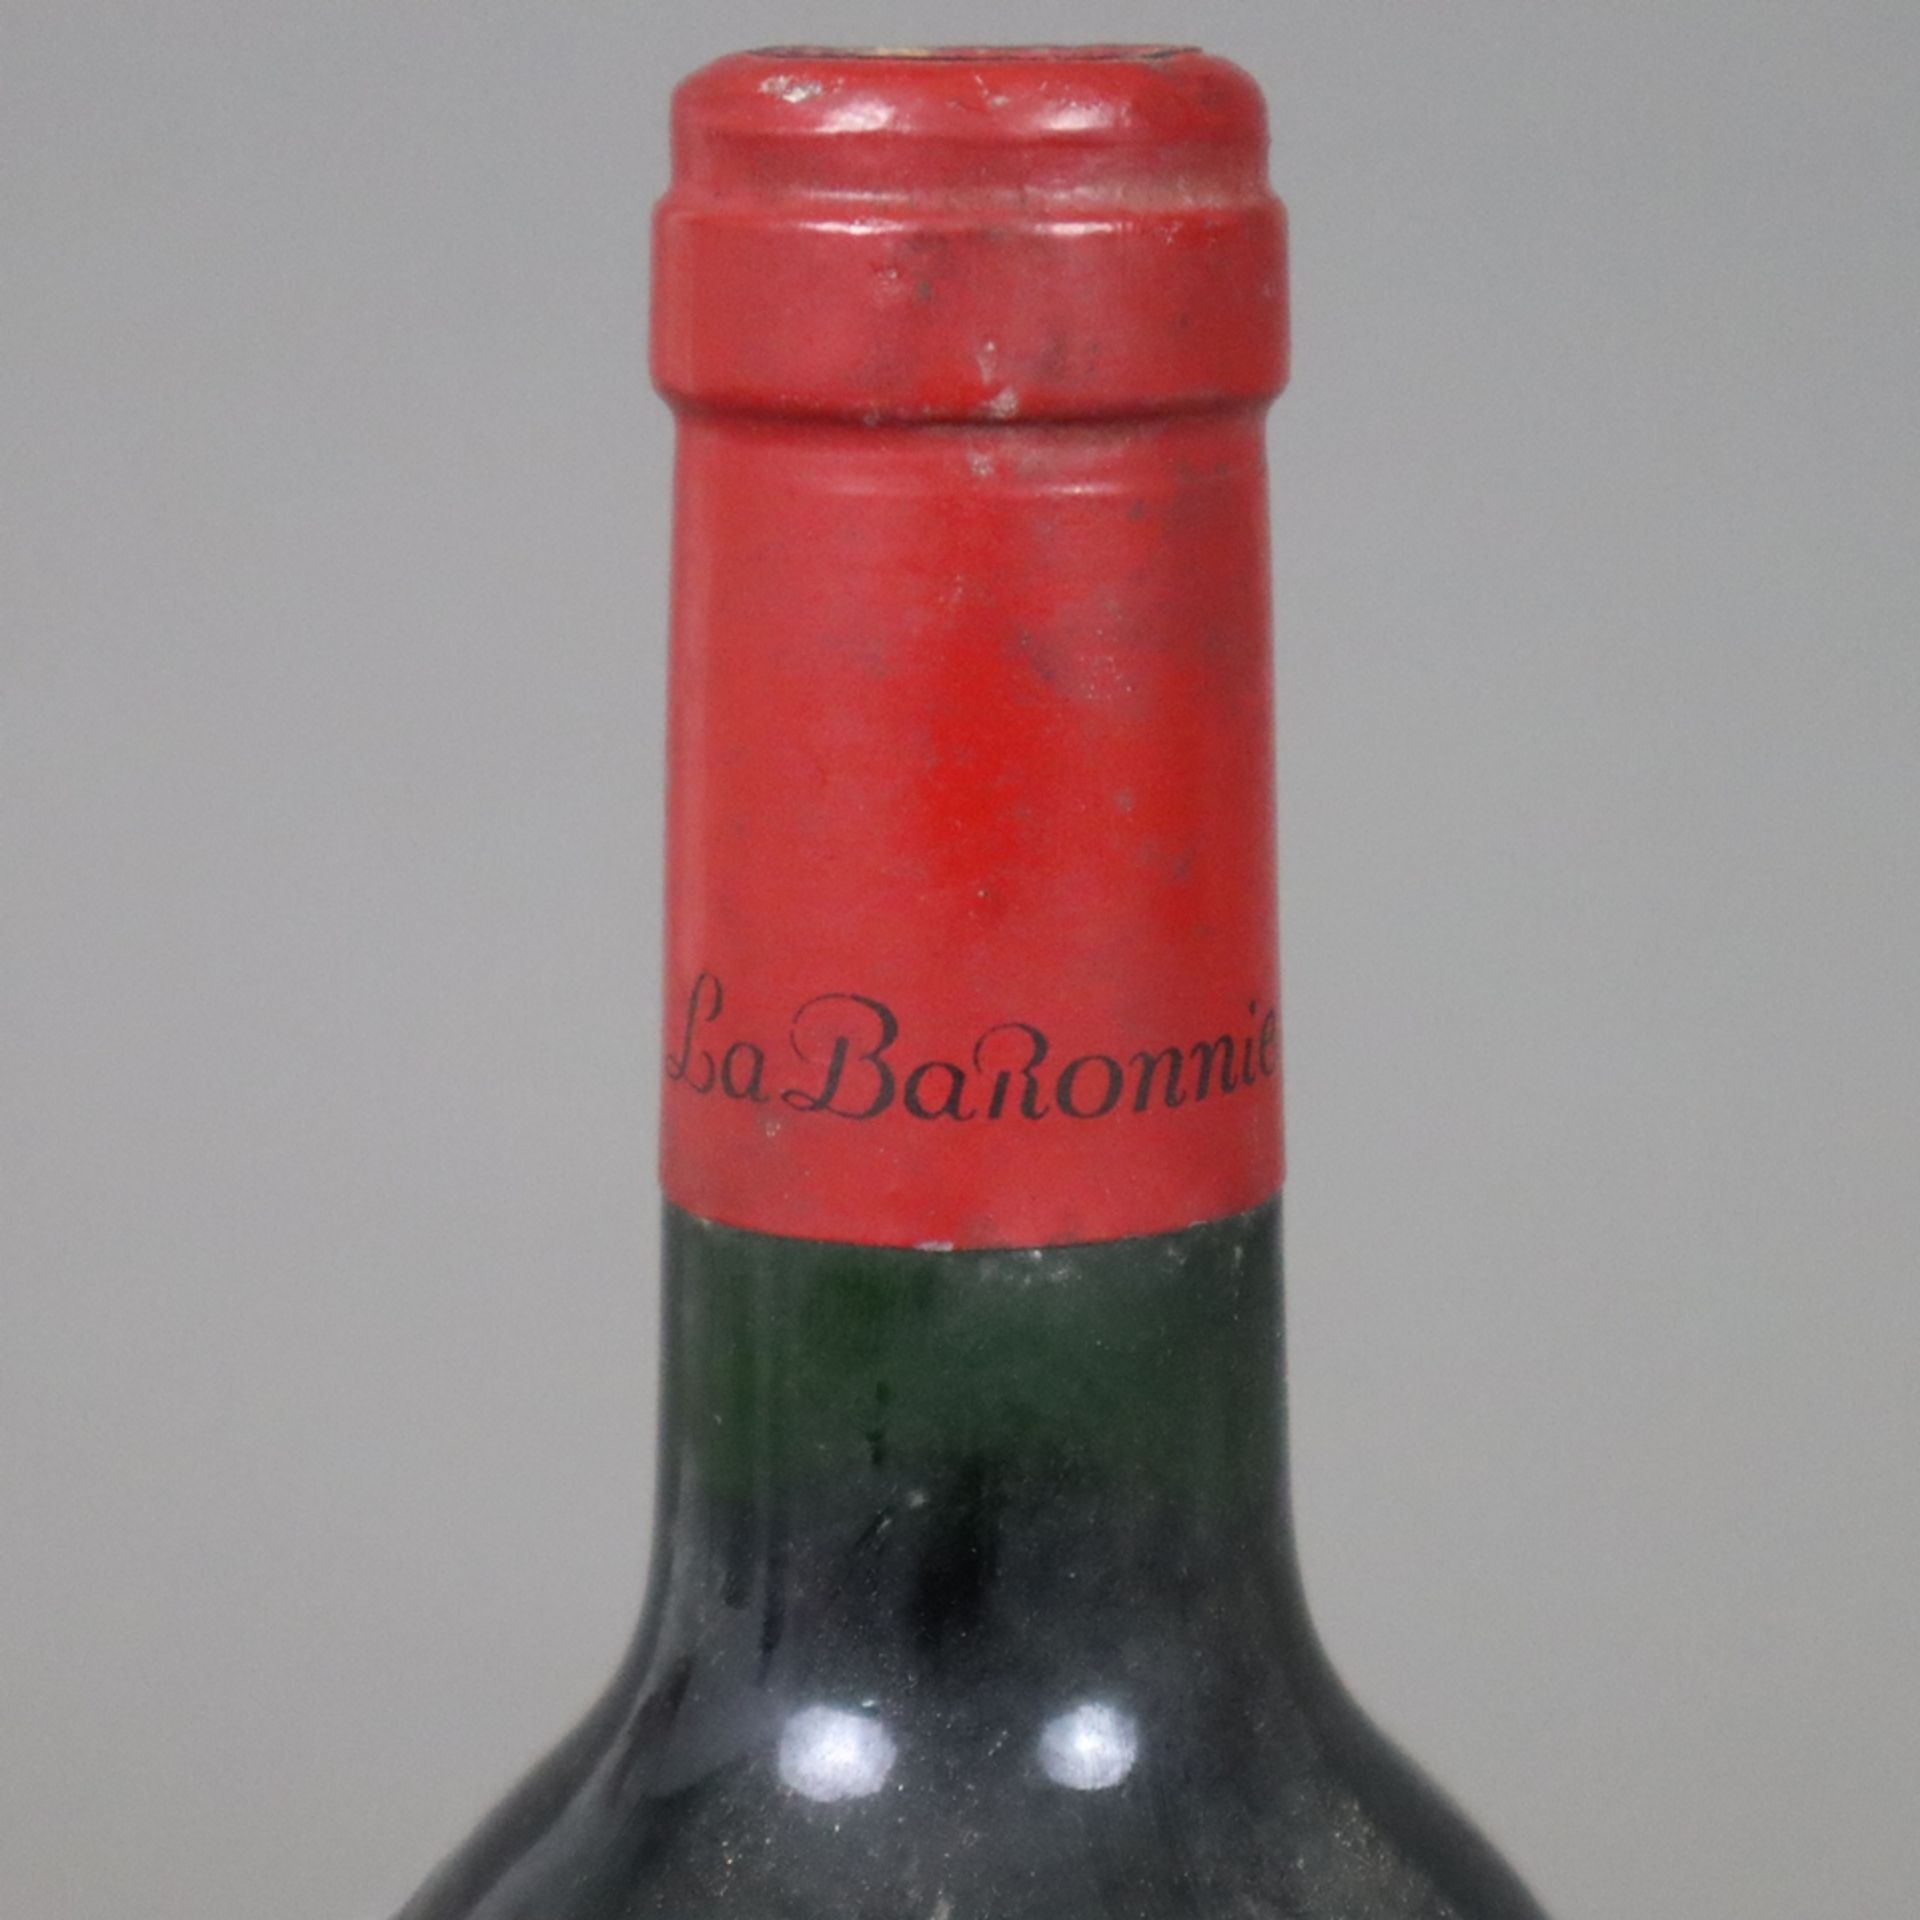 Wein - 1986 Baron Philippe de Rothschild Mouton Cadet, France, 0,7 L, Flasche verschmutzt, Etikett - Image 3 of 6